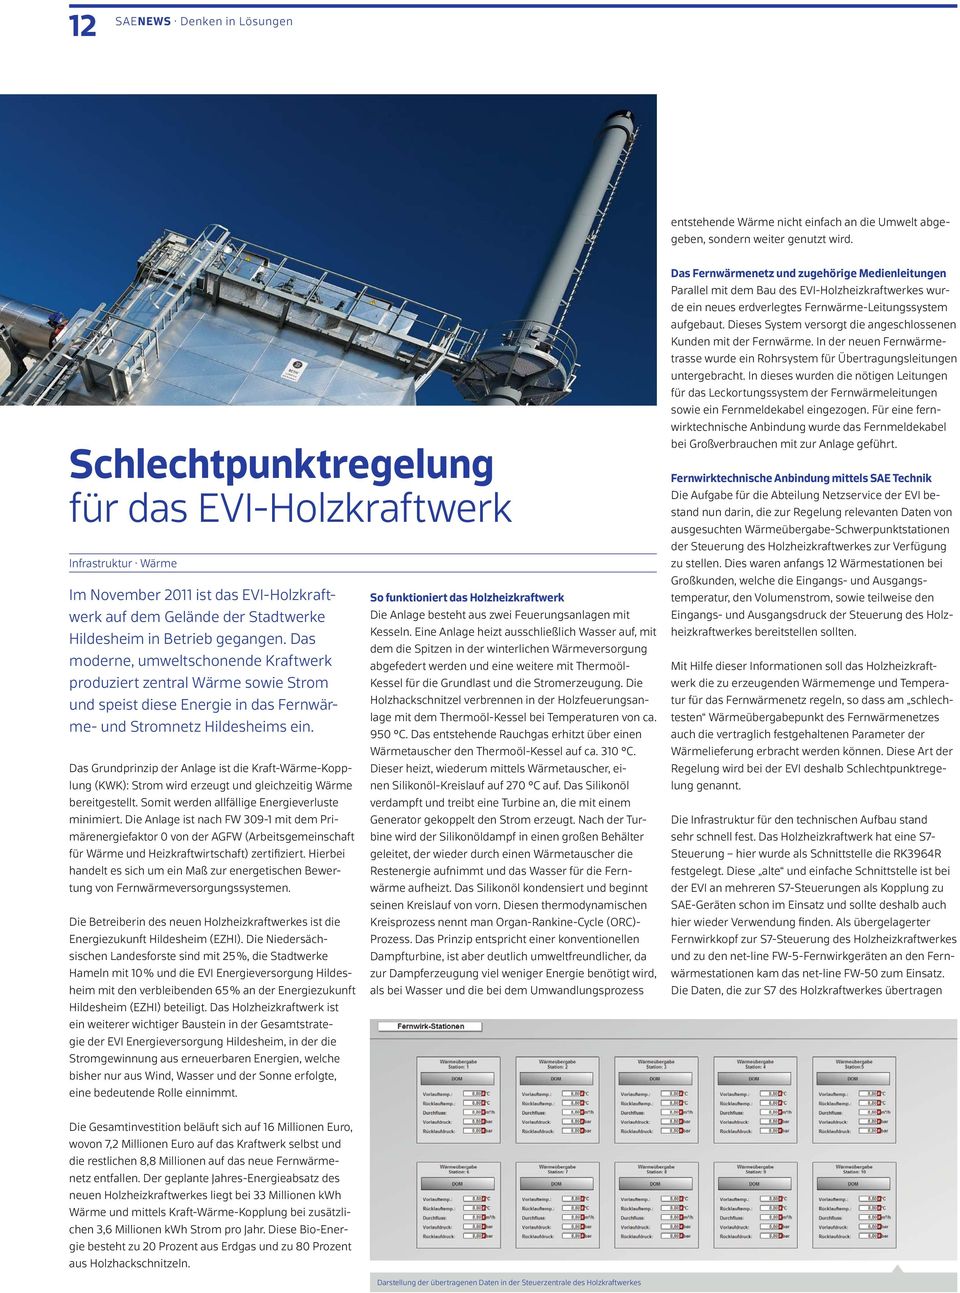 Das moderne, umweltschonende Kraftwerk produziert zentral Wärme sowie Strom und speist diese Energie in das Fernwärme- und Stromnetz Hildesheims ein.